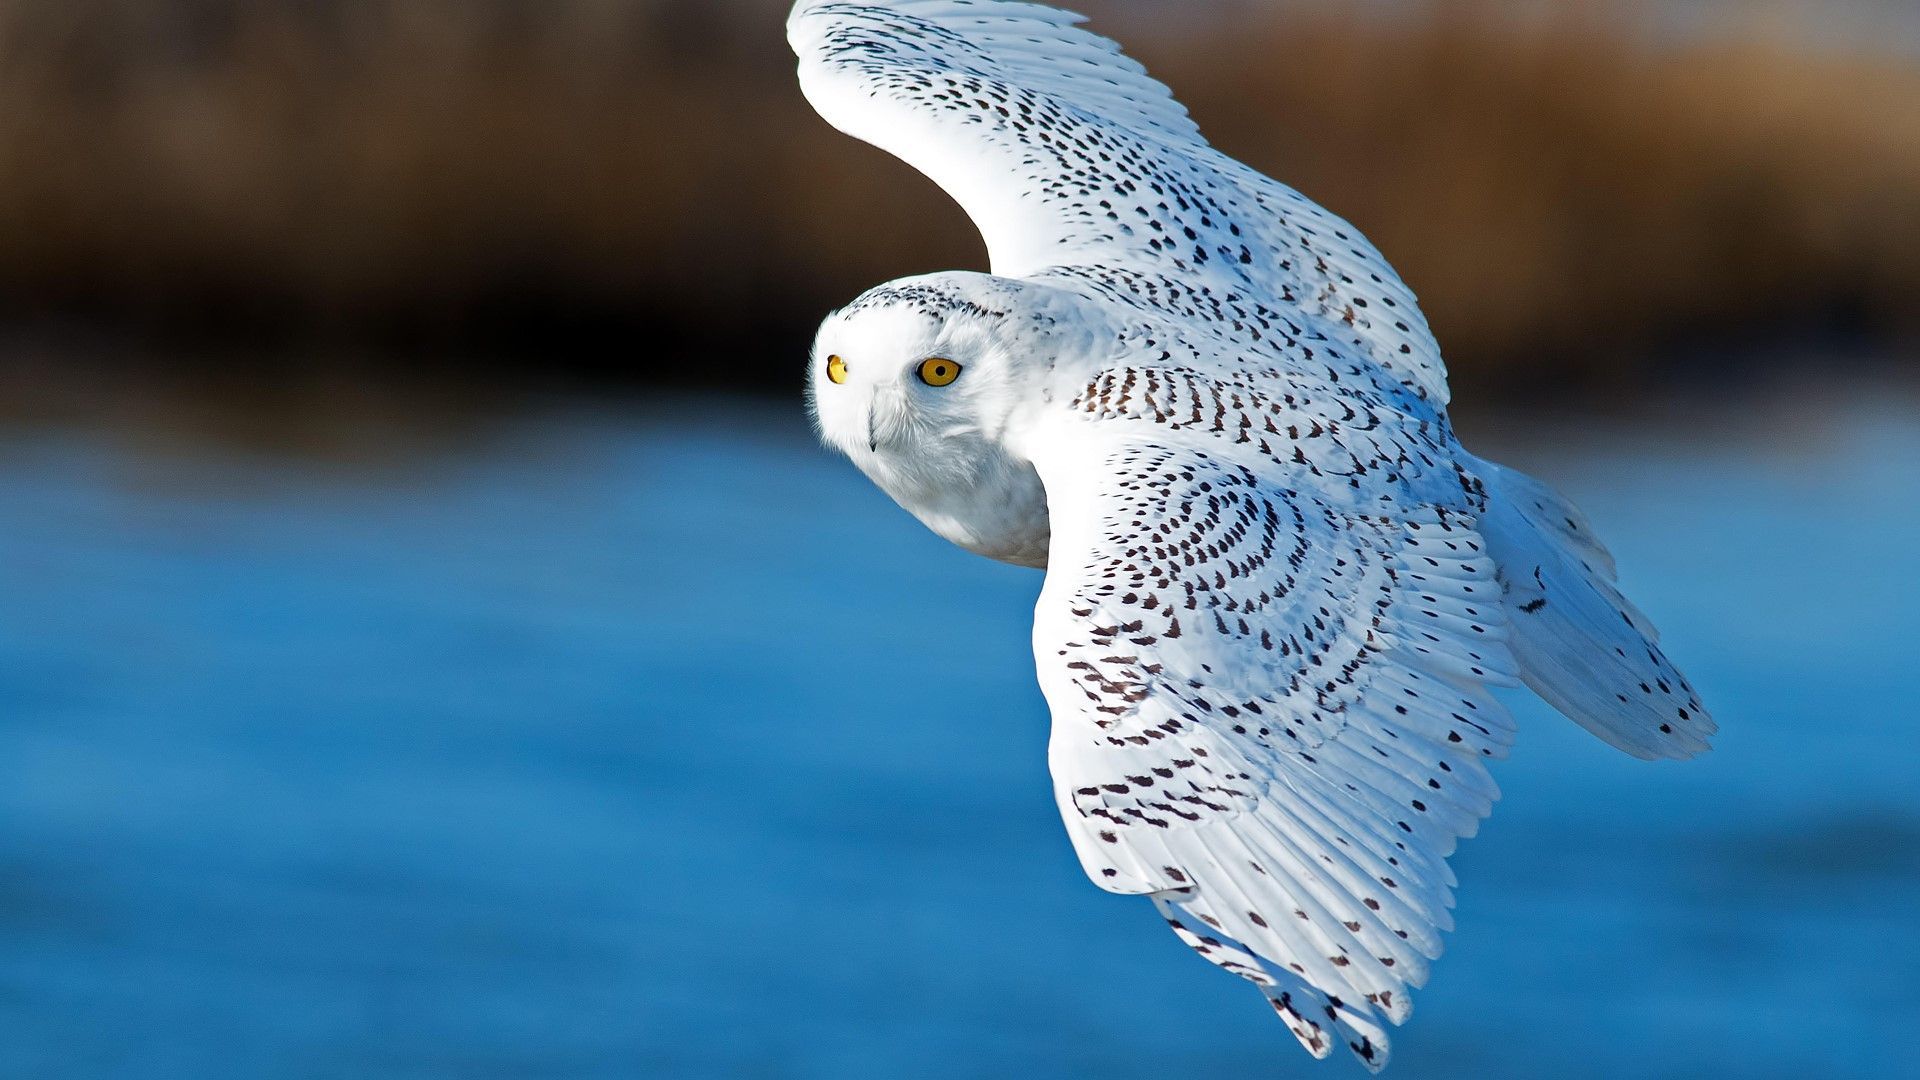 Snowy owl in flight over blue water .windows10spotlight.com